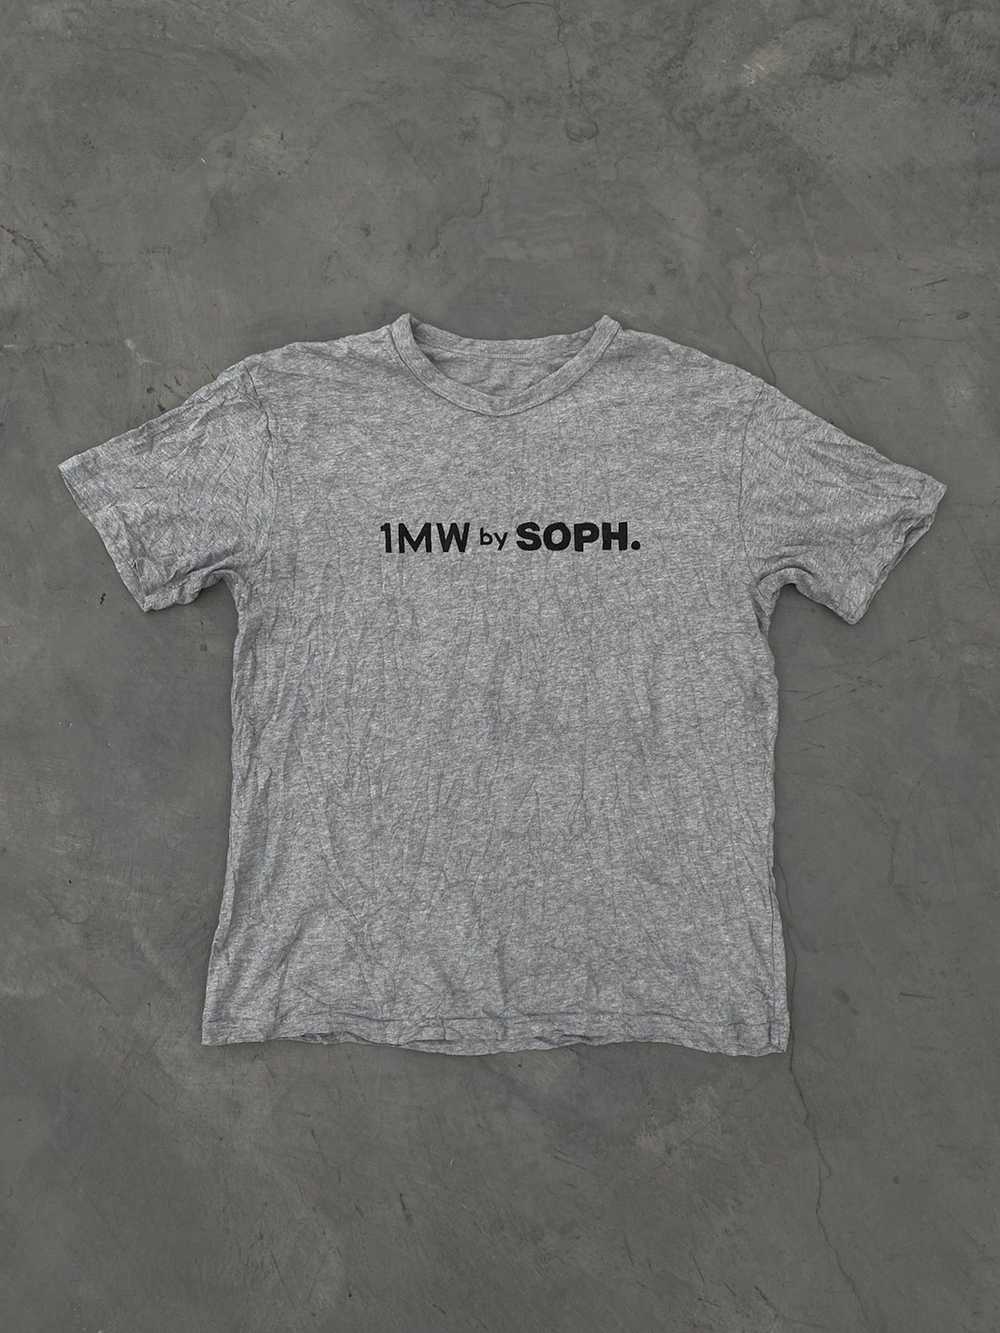 GU × Sophnet. 1MW By Soph x Gu Tshirt - image 1